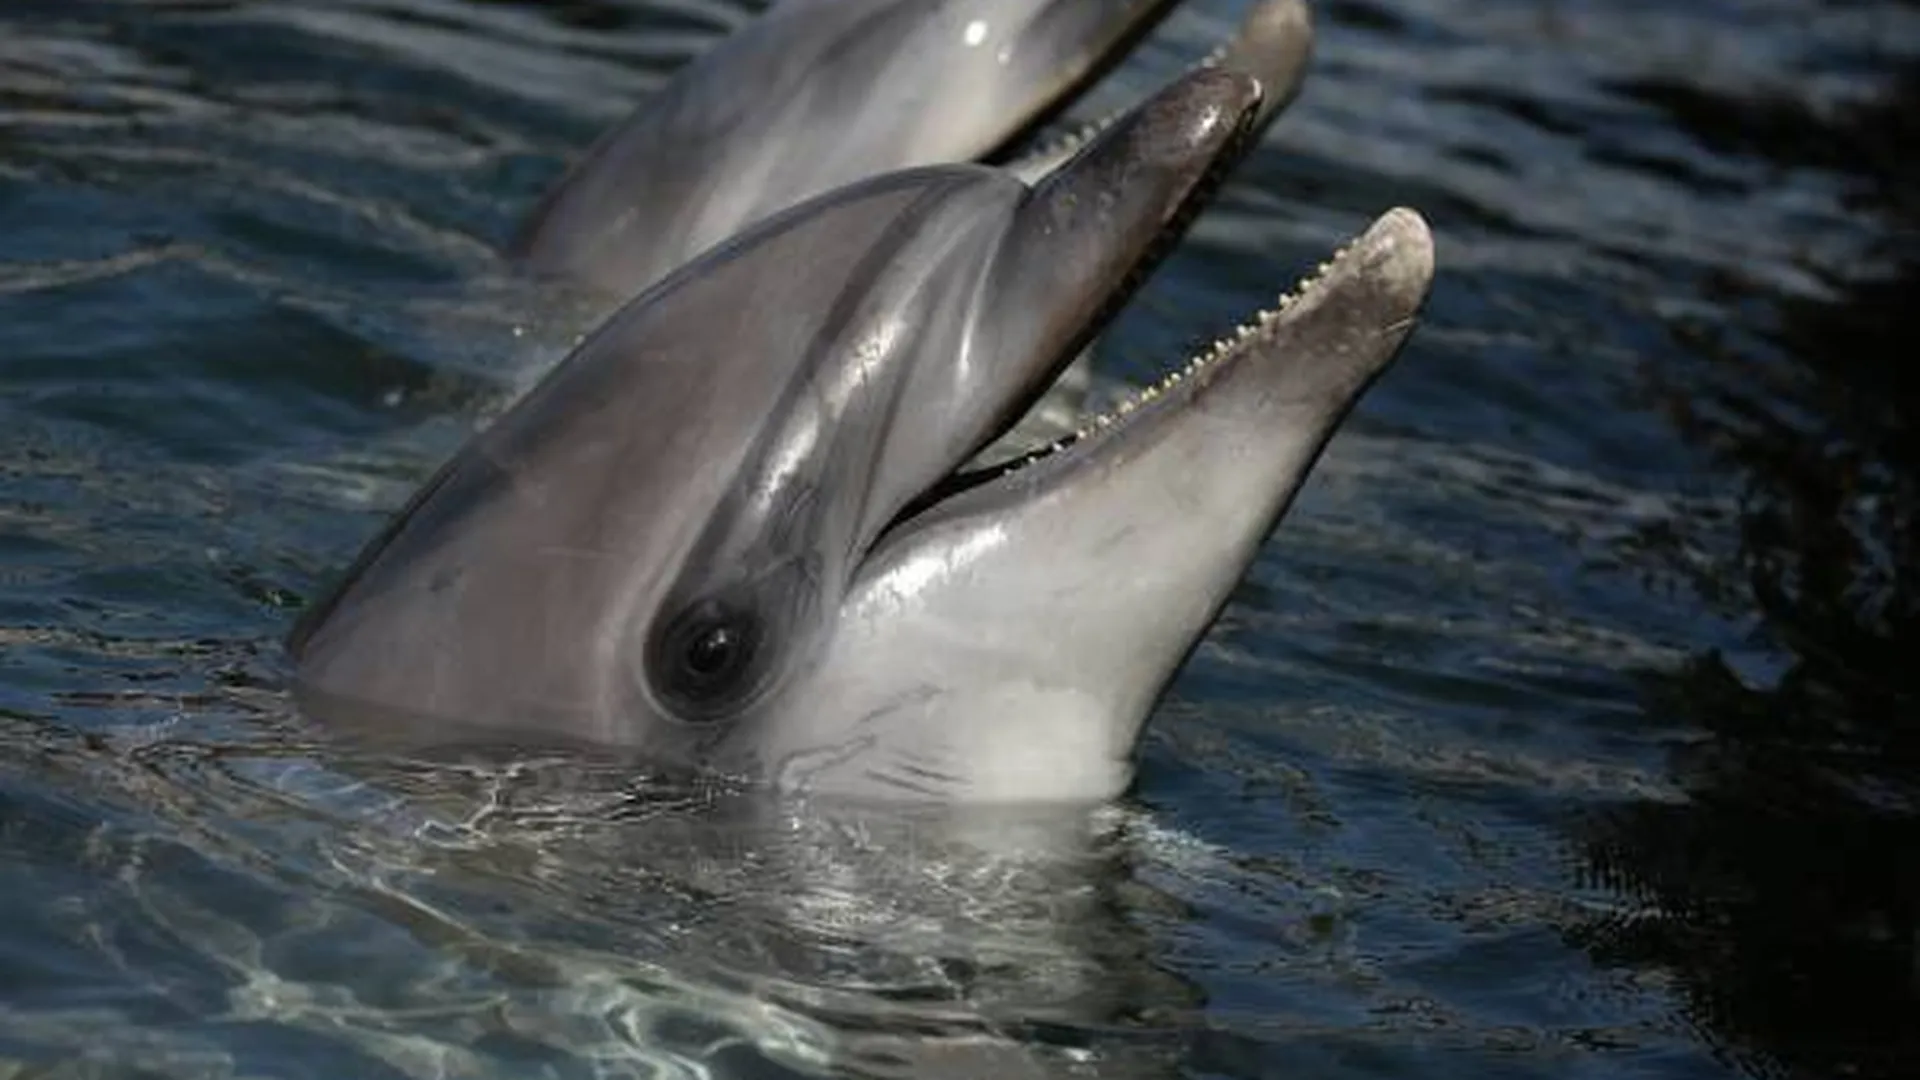 Дельфины вернулись в венецианские каналы. Интернет наполнился шутками, но это совсем не смешно